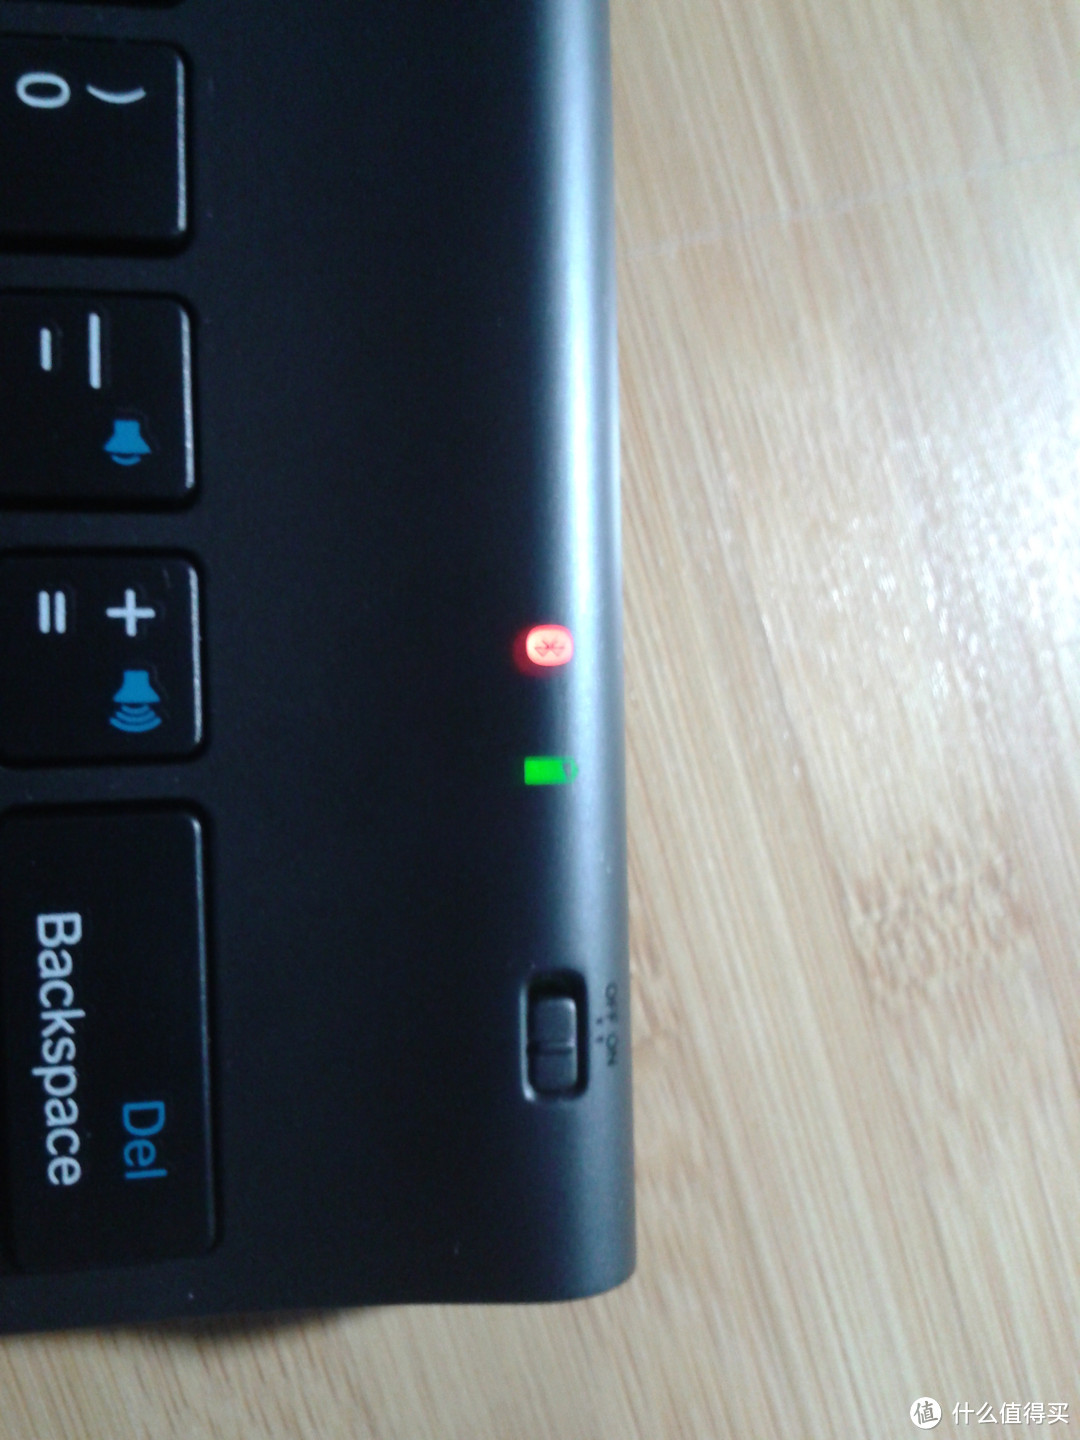 键盘角上从左向右为蓝牙连接、电源、开关，键盘正常连接时候蓝牙灯是蓝色的，未连接时候是红色的